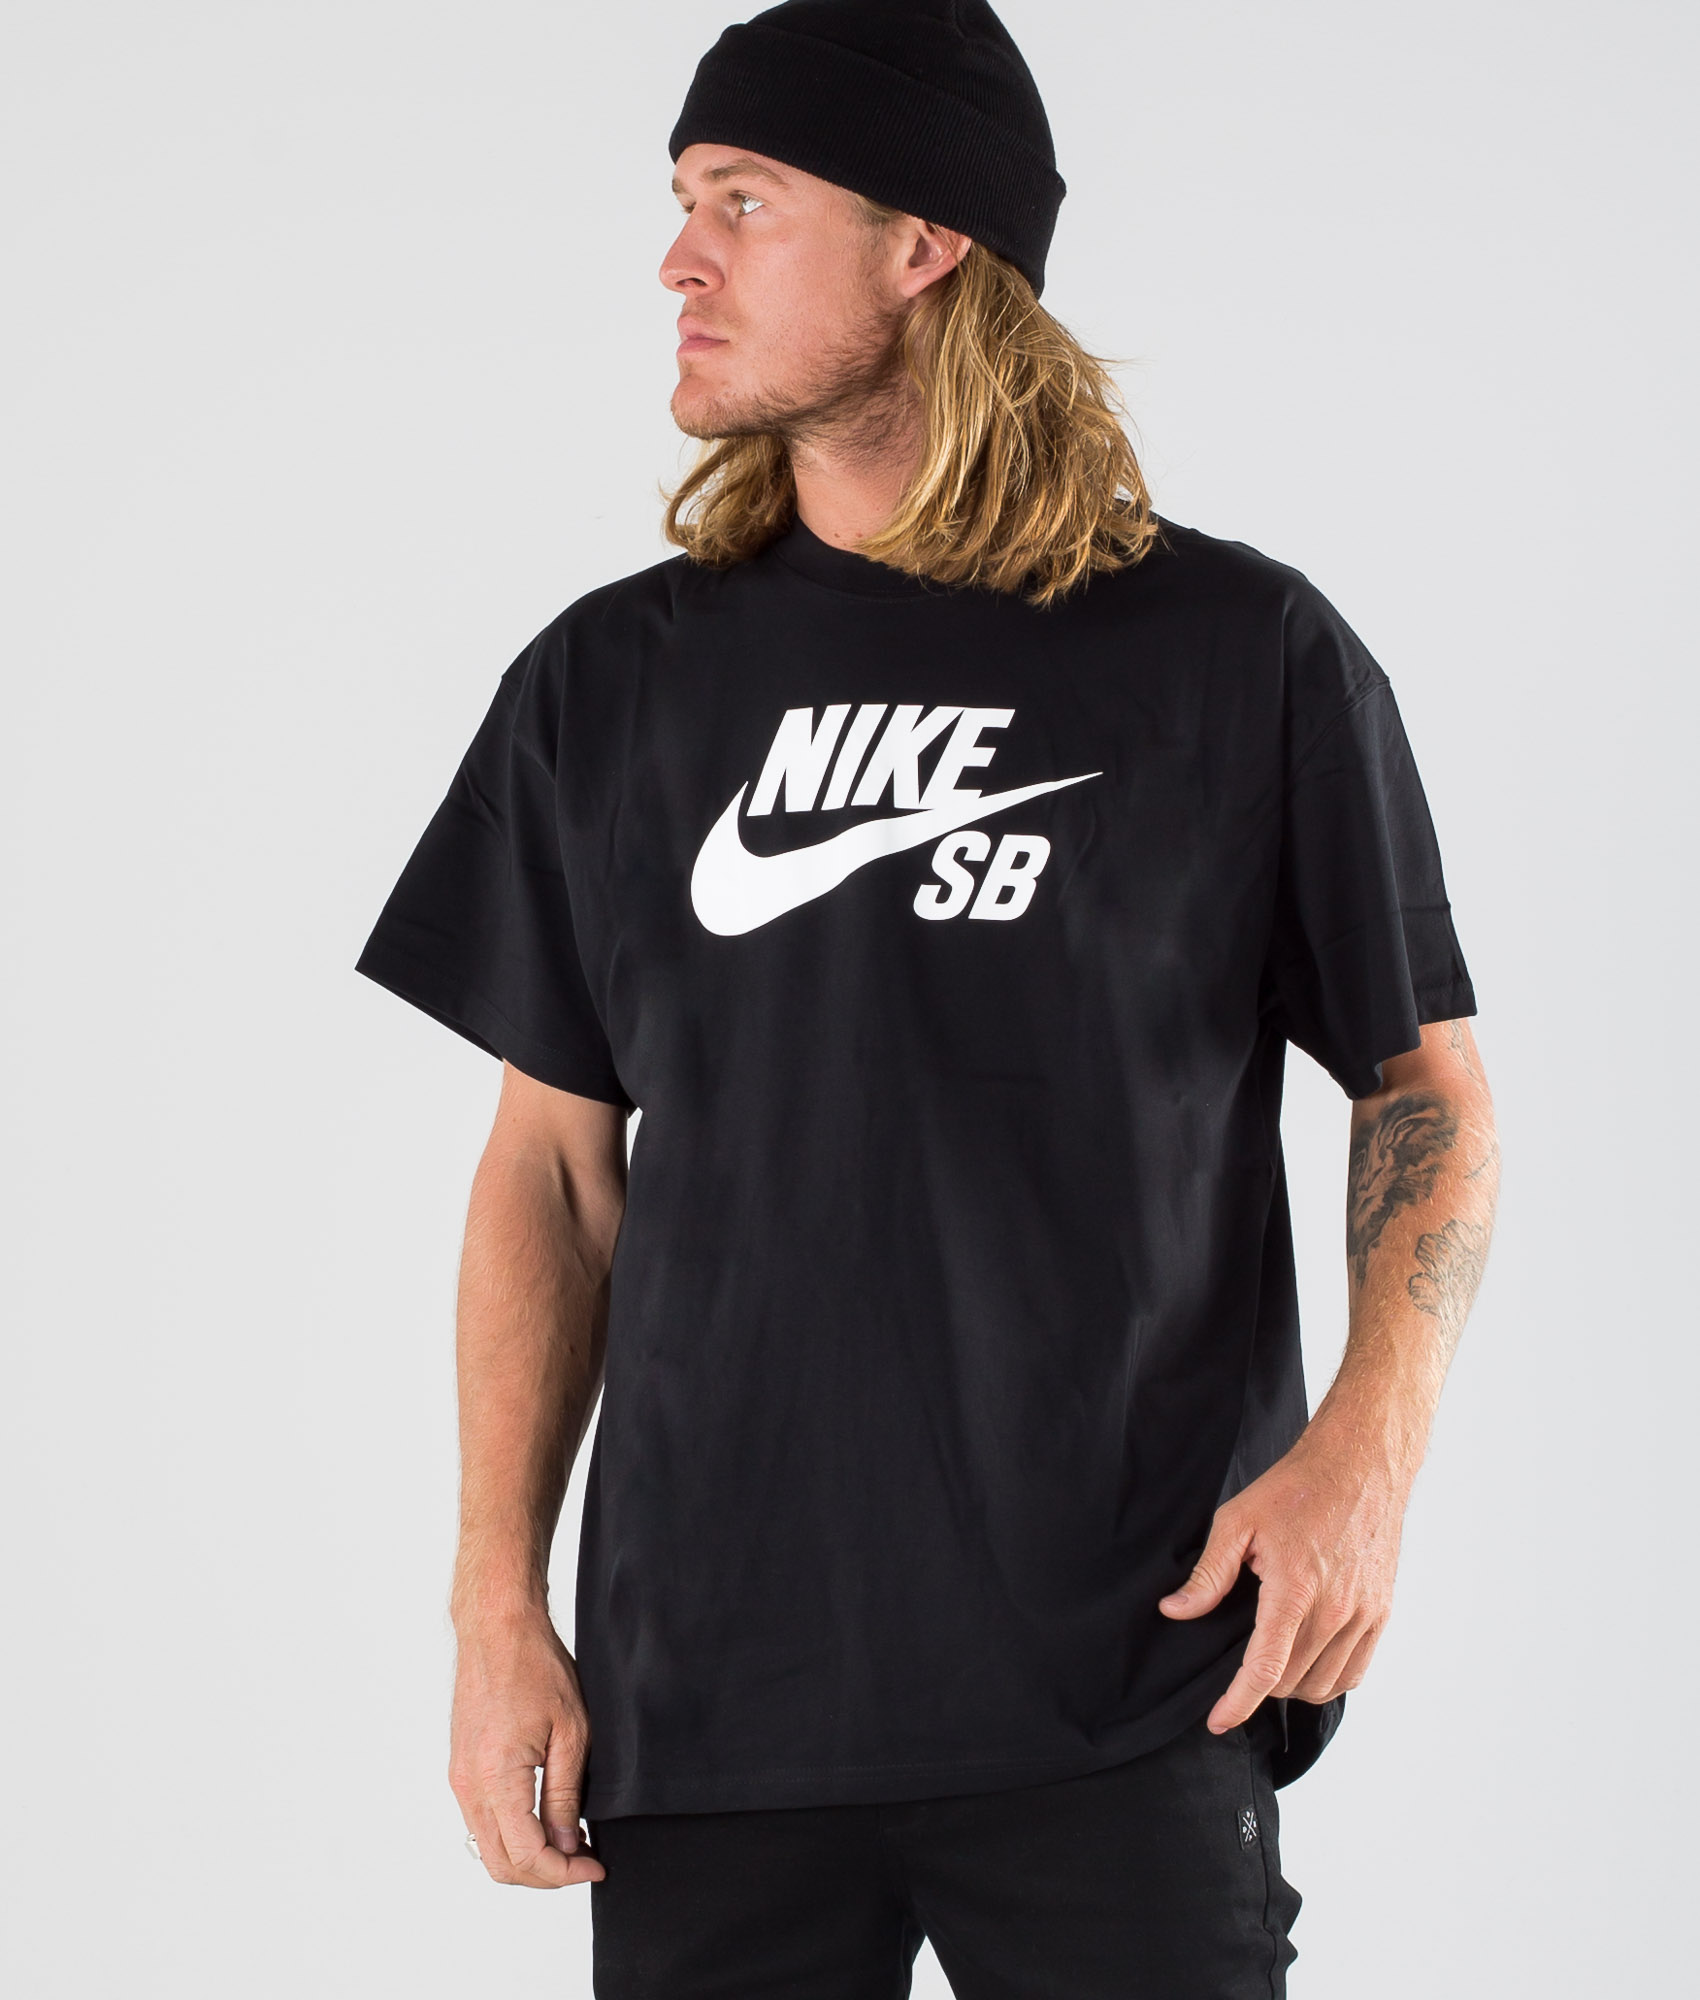 Nike SB Skate Tee Logo T-shirt Black 